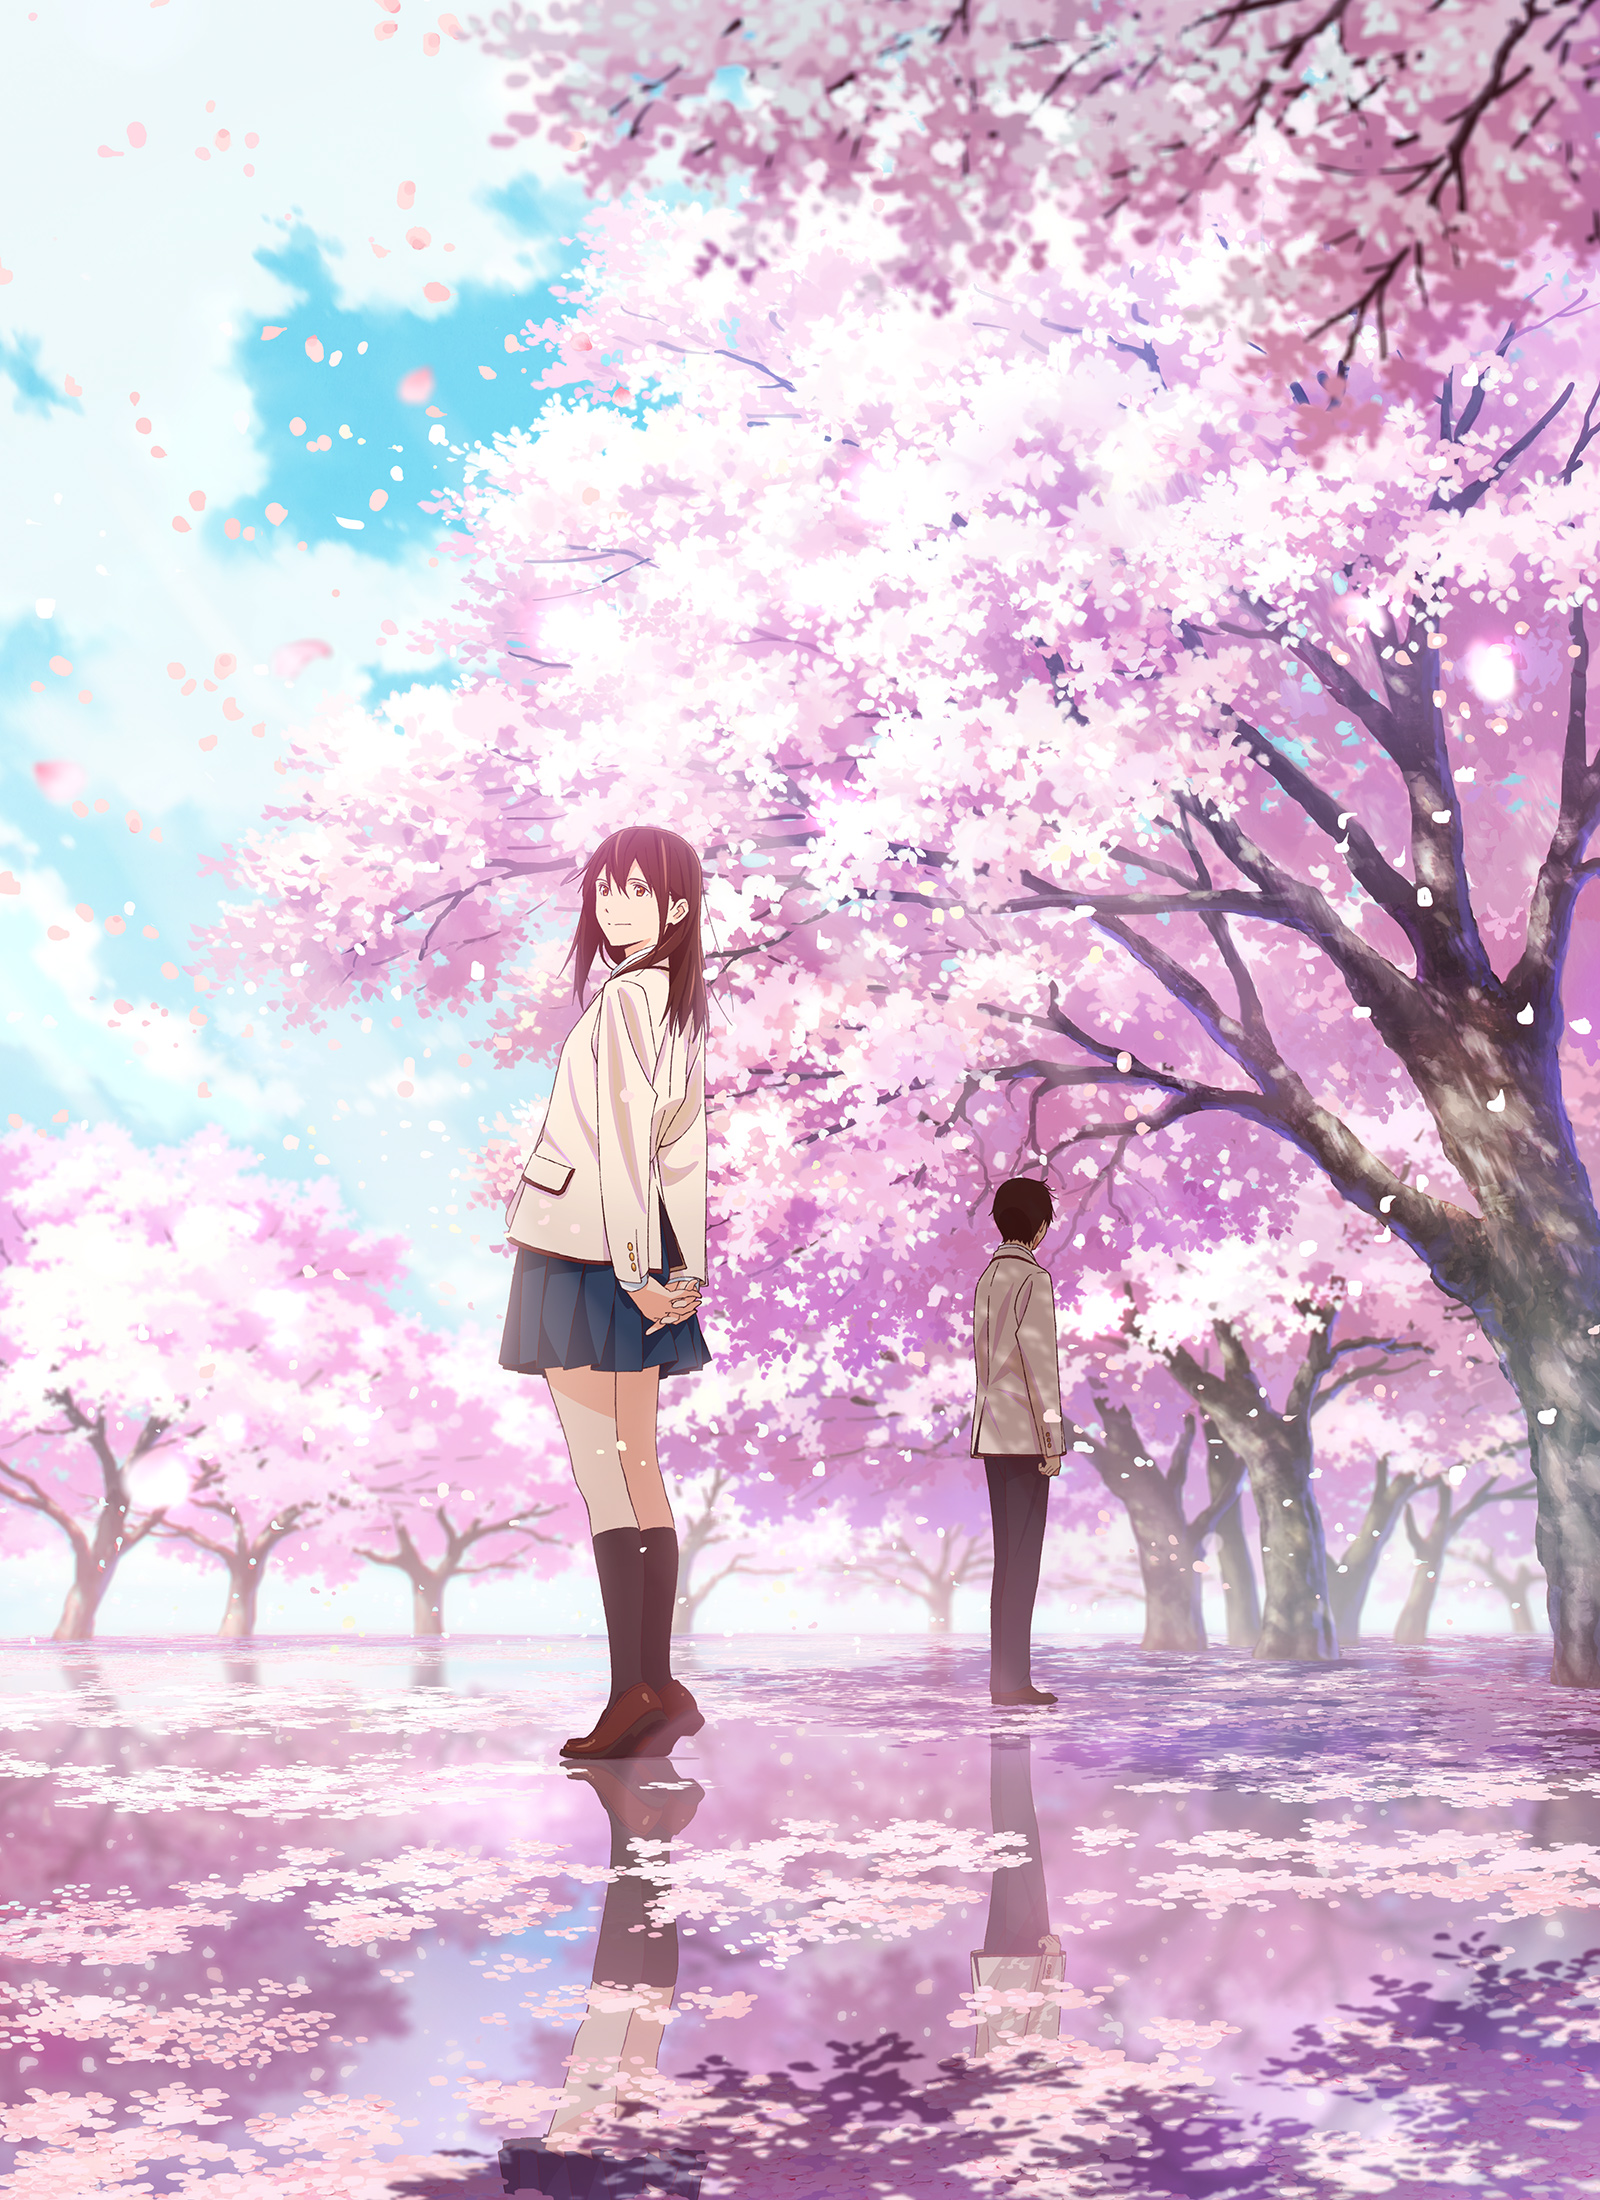 Yamauchi Sakura no Suizou wo Tabetai Anime Image Board